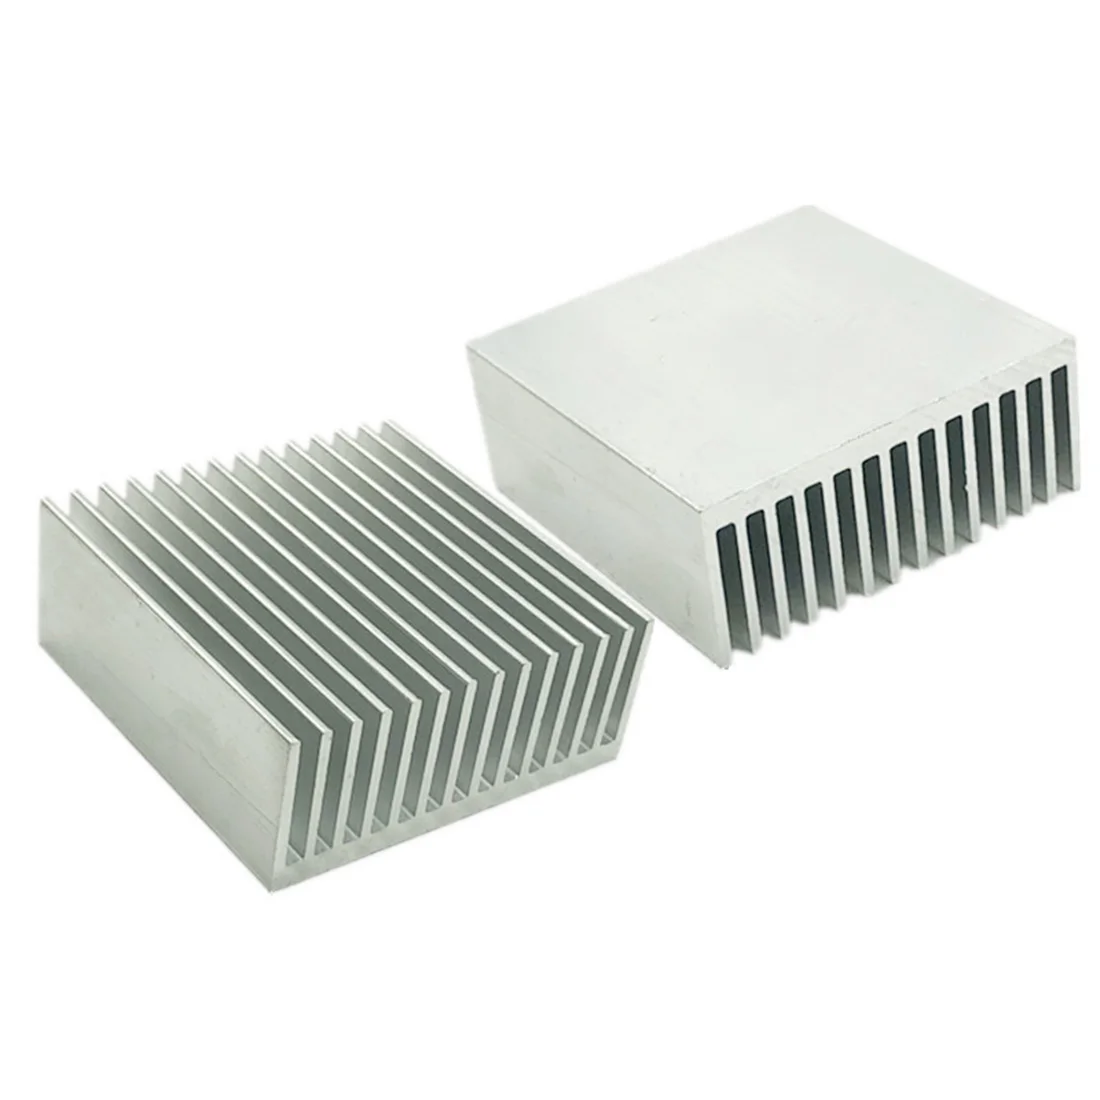 Heat sink IC Kühlkörper Aluminum Cooling Fin For CPU LED Transistor Power 